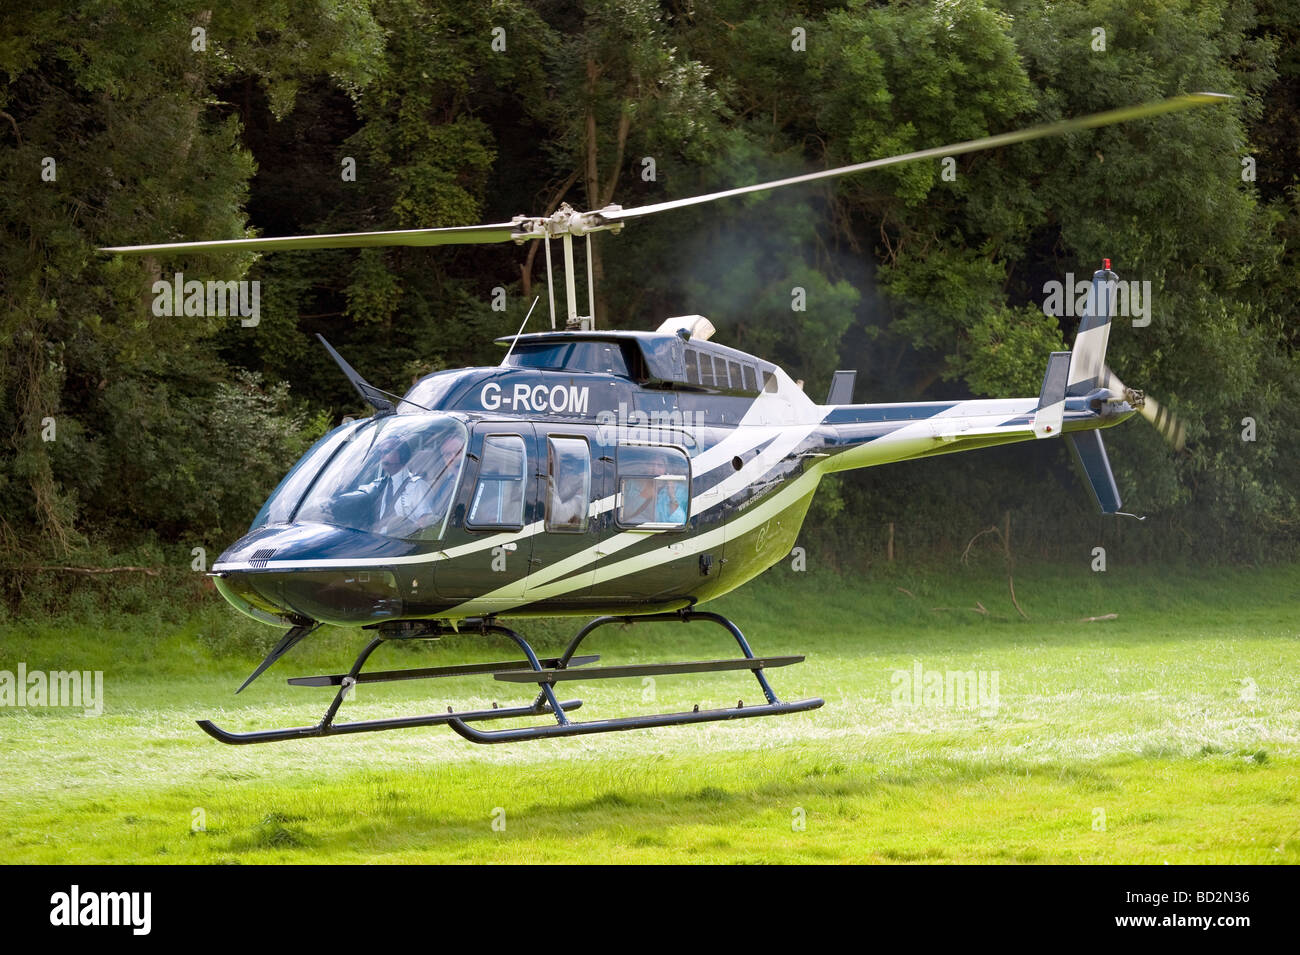 Hélicoptère à l'atterrissage dans un champ, au Royaume-Uni. Tourisme voyage en hélicoptère sur un vol vue voyant, en Angleterre. Banque D'Images